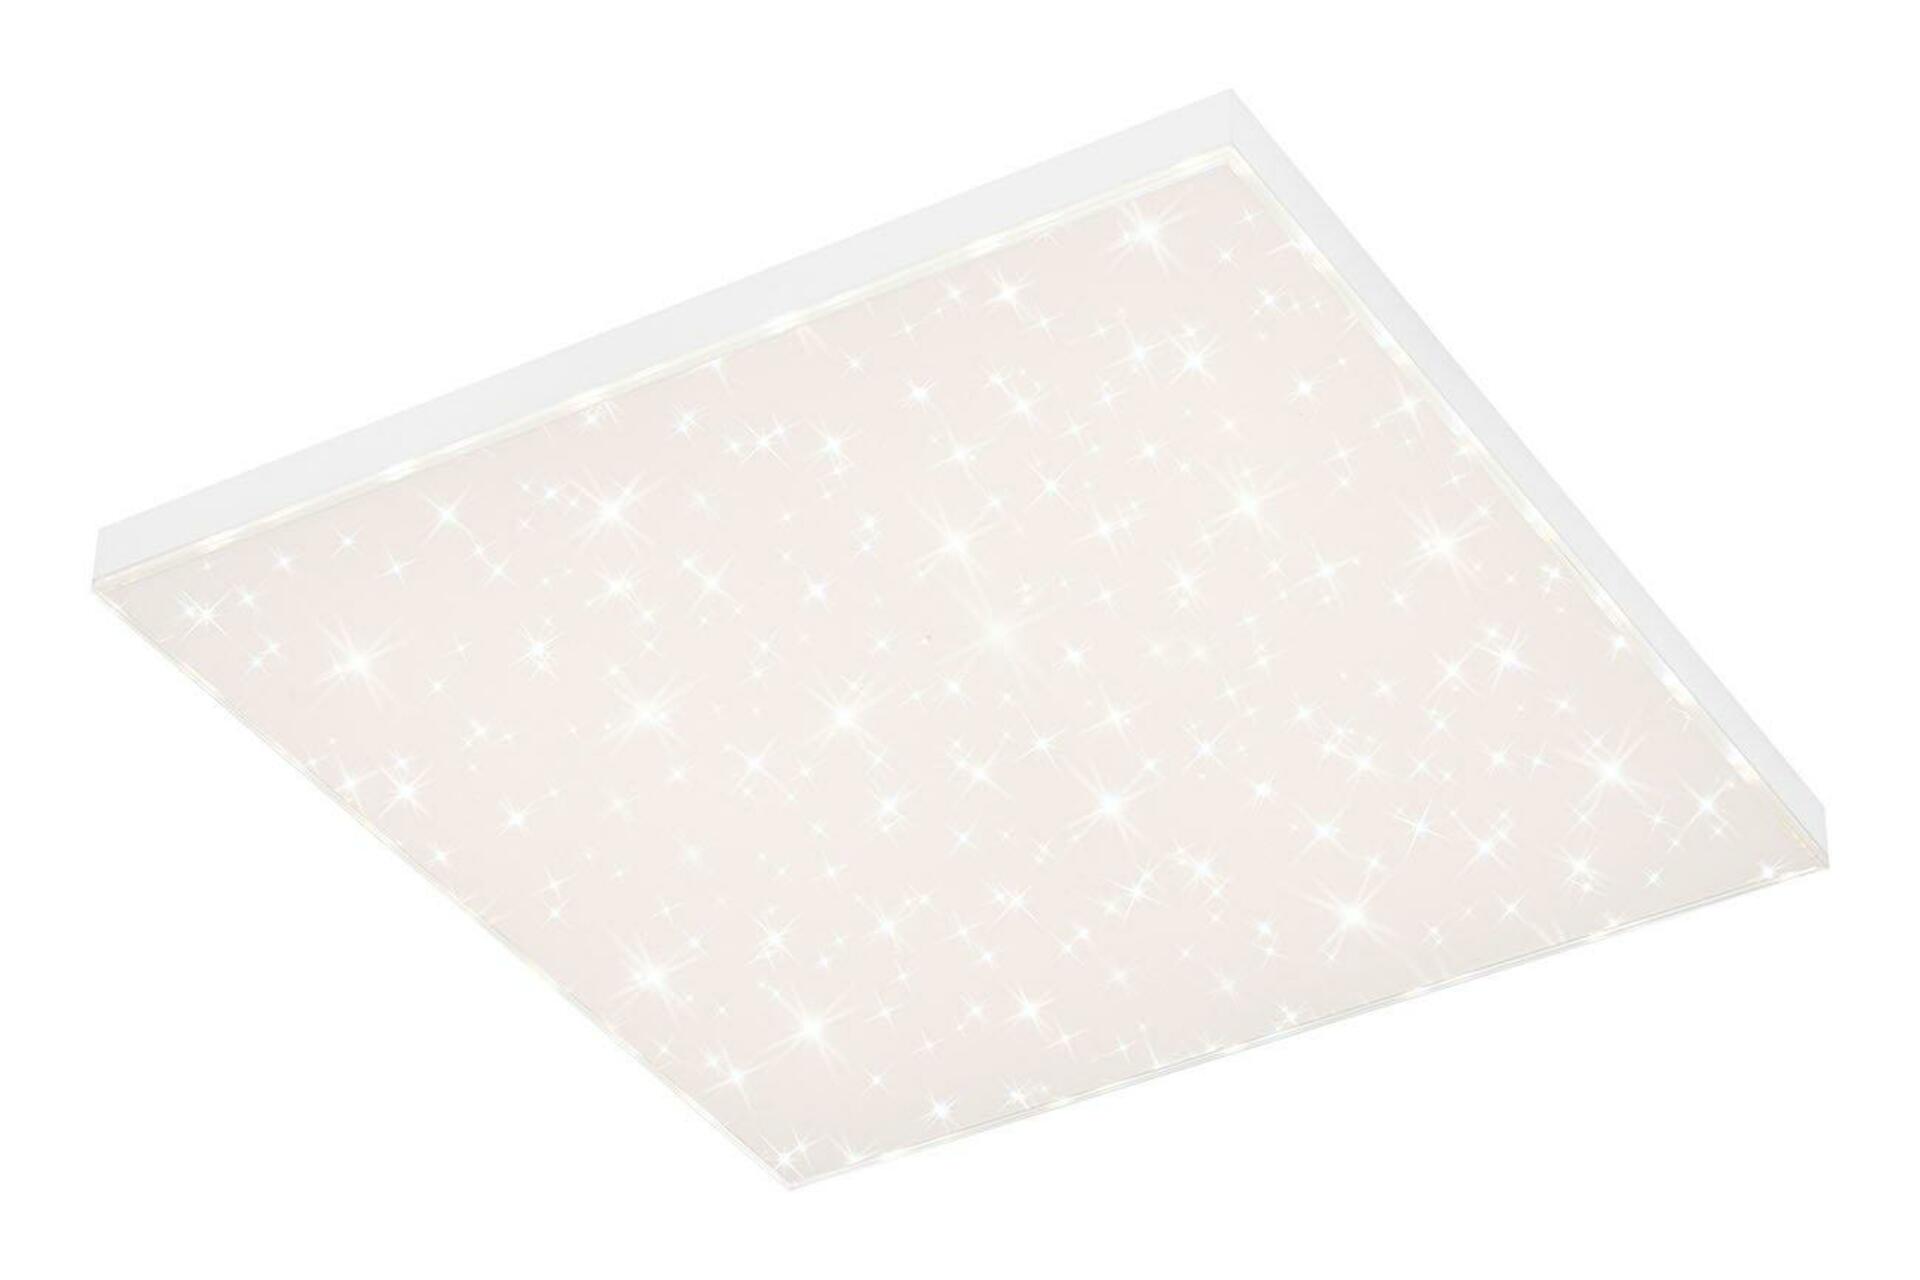 BRILONER CCT svítidlo LED panel, 59,5 cm, 38 W, bílé BRILO 7381-216